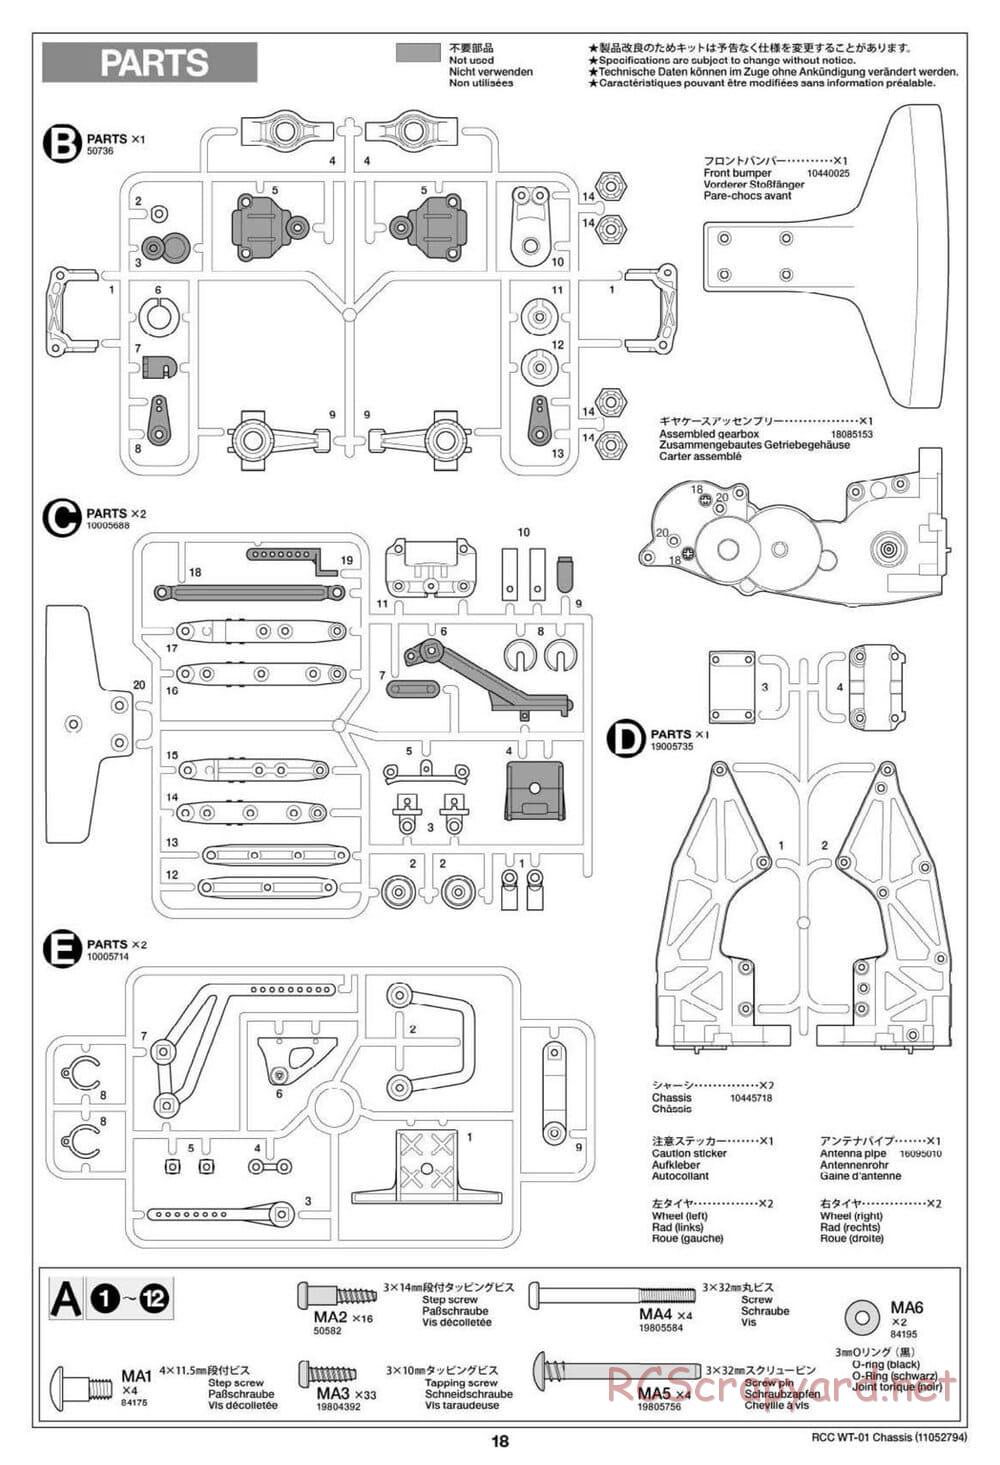 Tamiya - WT-01 Chassis - Manual - Page 18